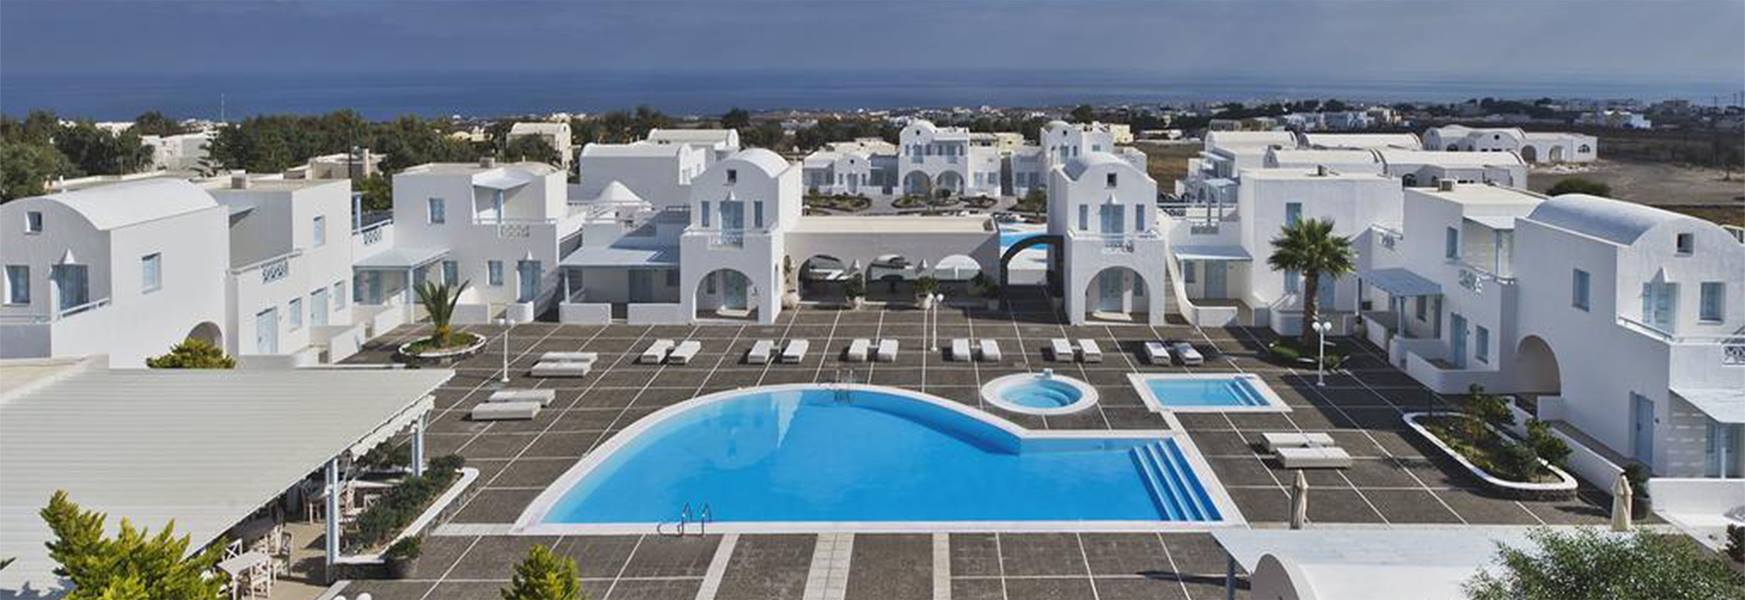 Hotel El Greco Resort & SPA